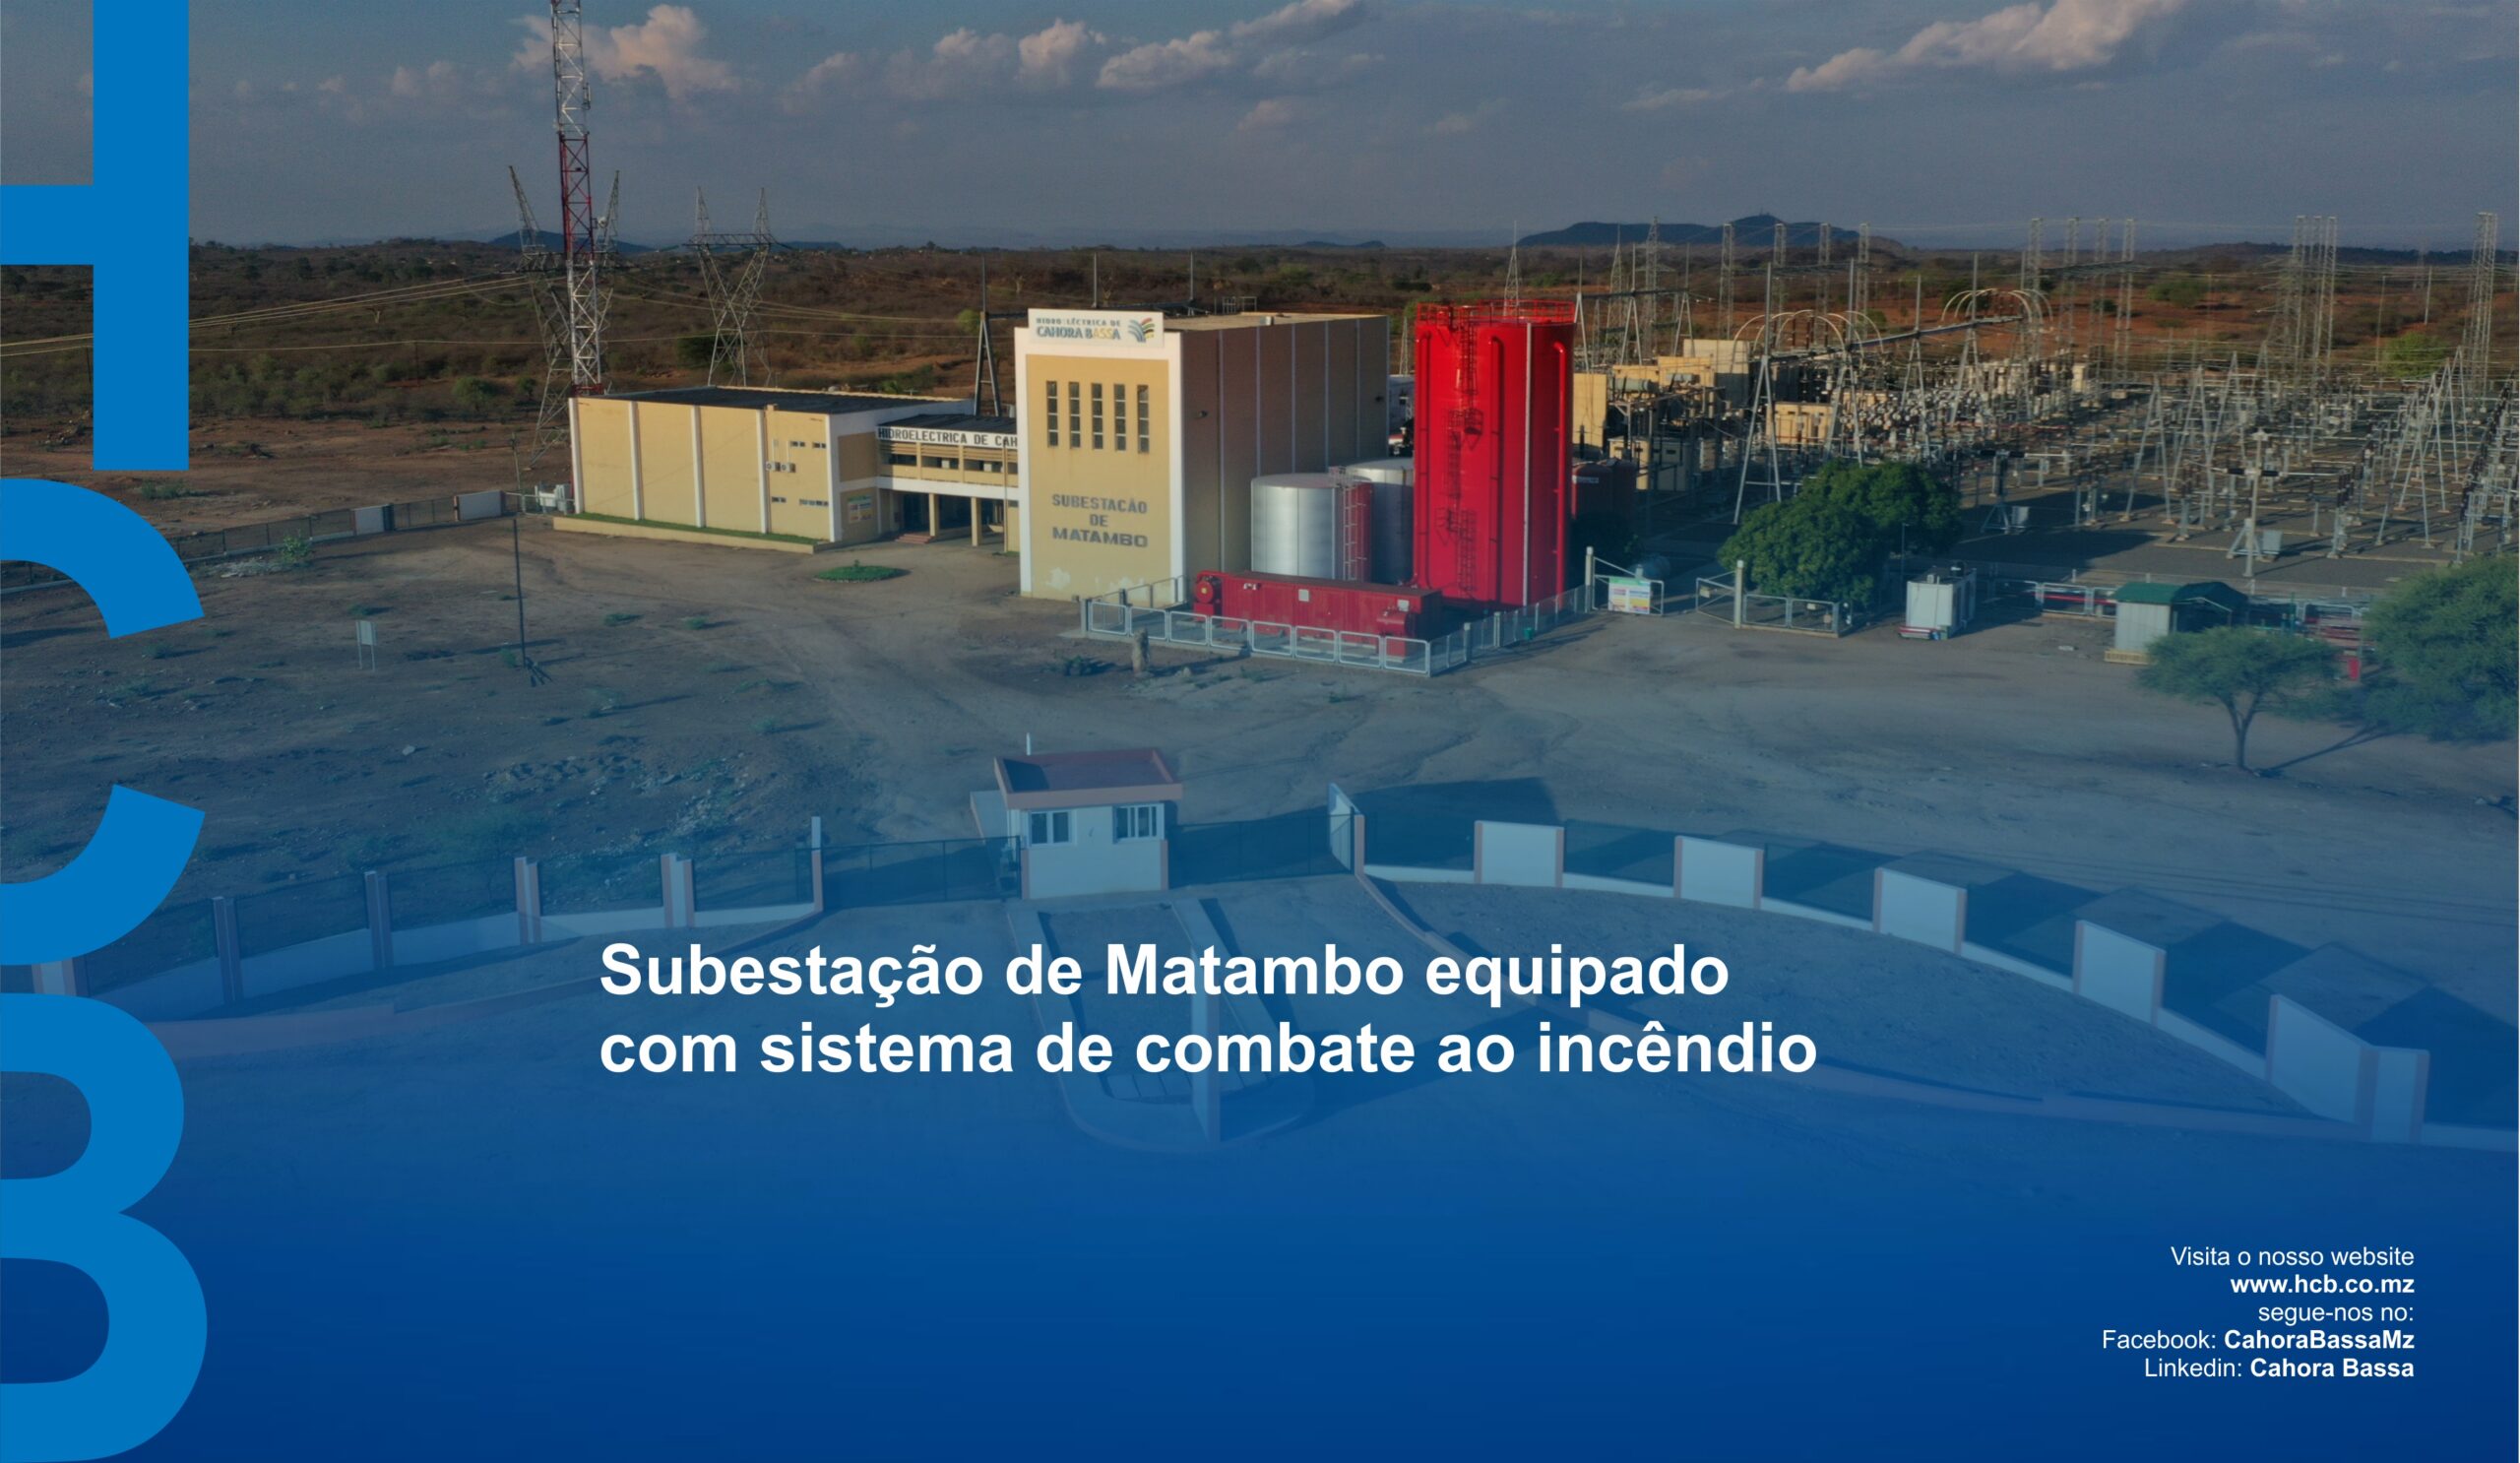 Subestação de Matambo equipado com sistema de combate ao incêndio, Intranet, 03 de Marco de 2021